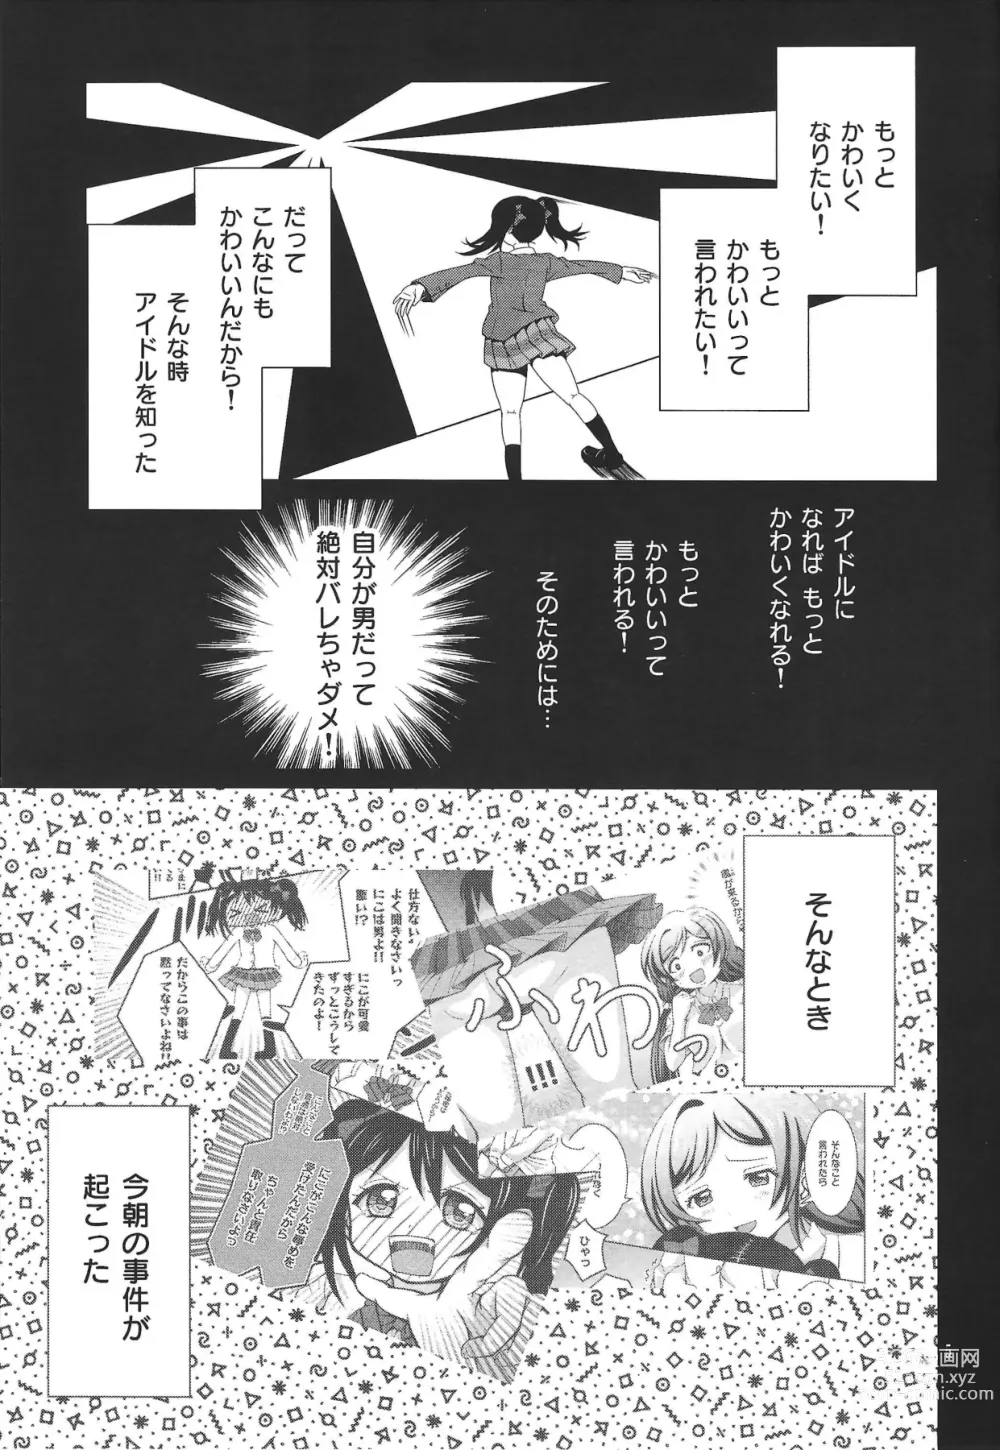 Page 4 of doujinshi Usotsuki Nico 2